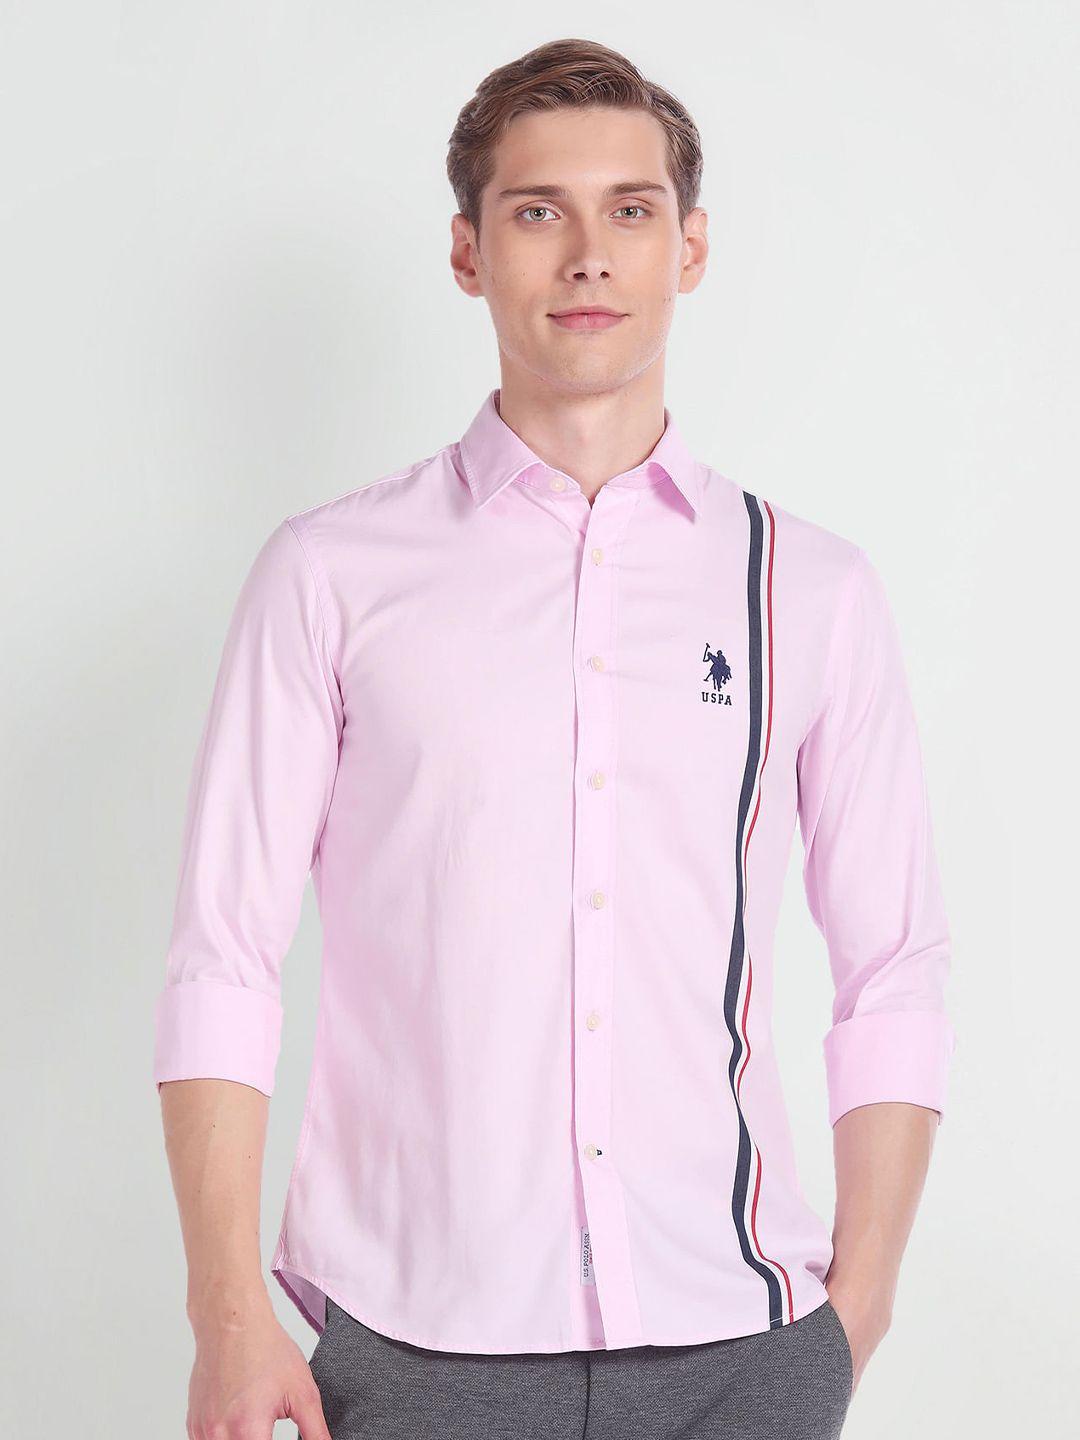 u.s. polo assn. premium vertical stripes spread collar long sleeves cotton casual shirt